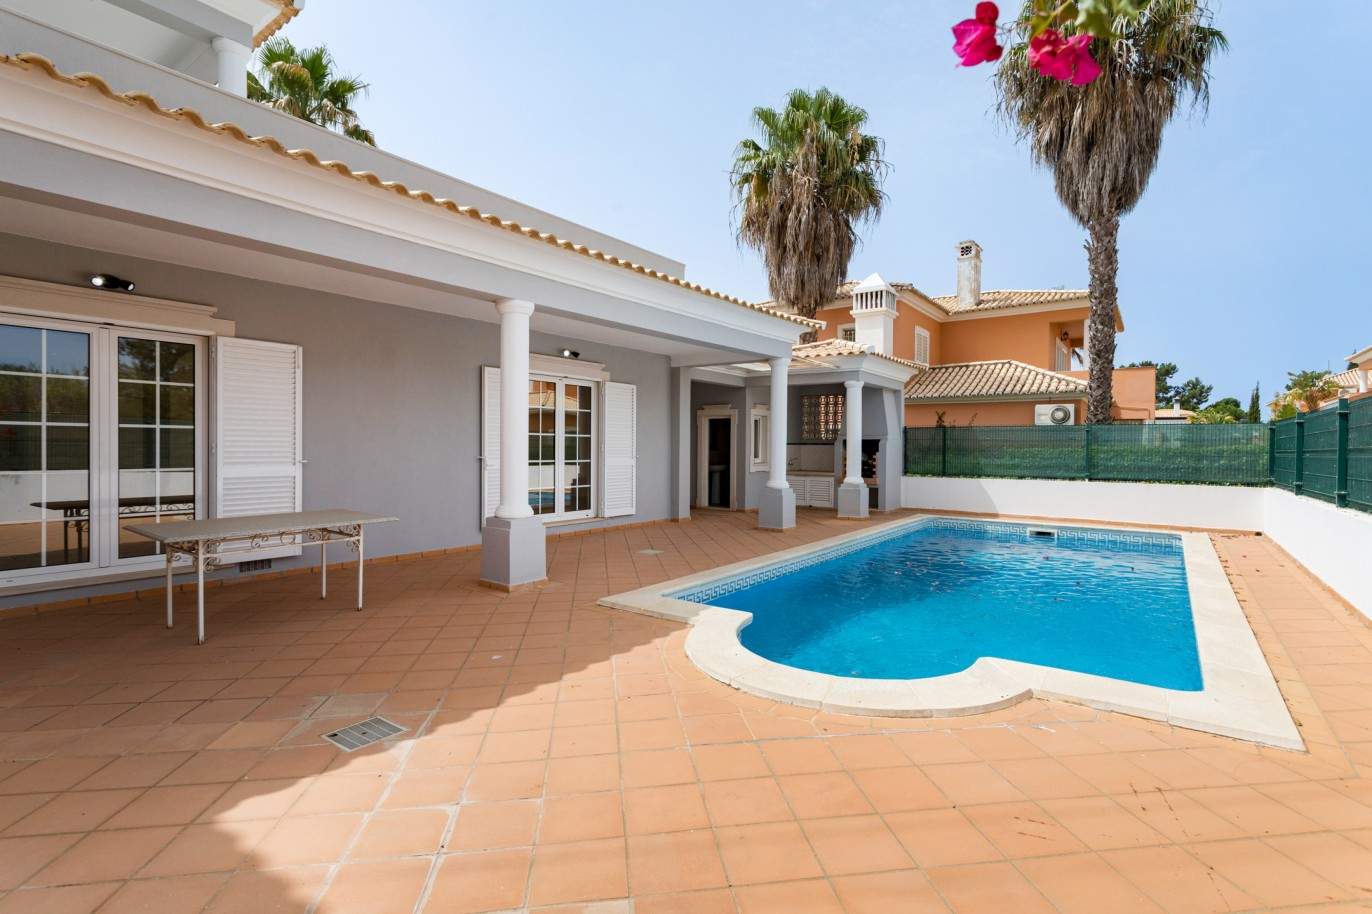 4 Bedroom Villa with pool à vendre à Quarteira, Algarve_201732